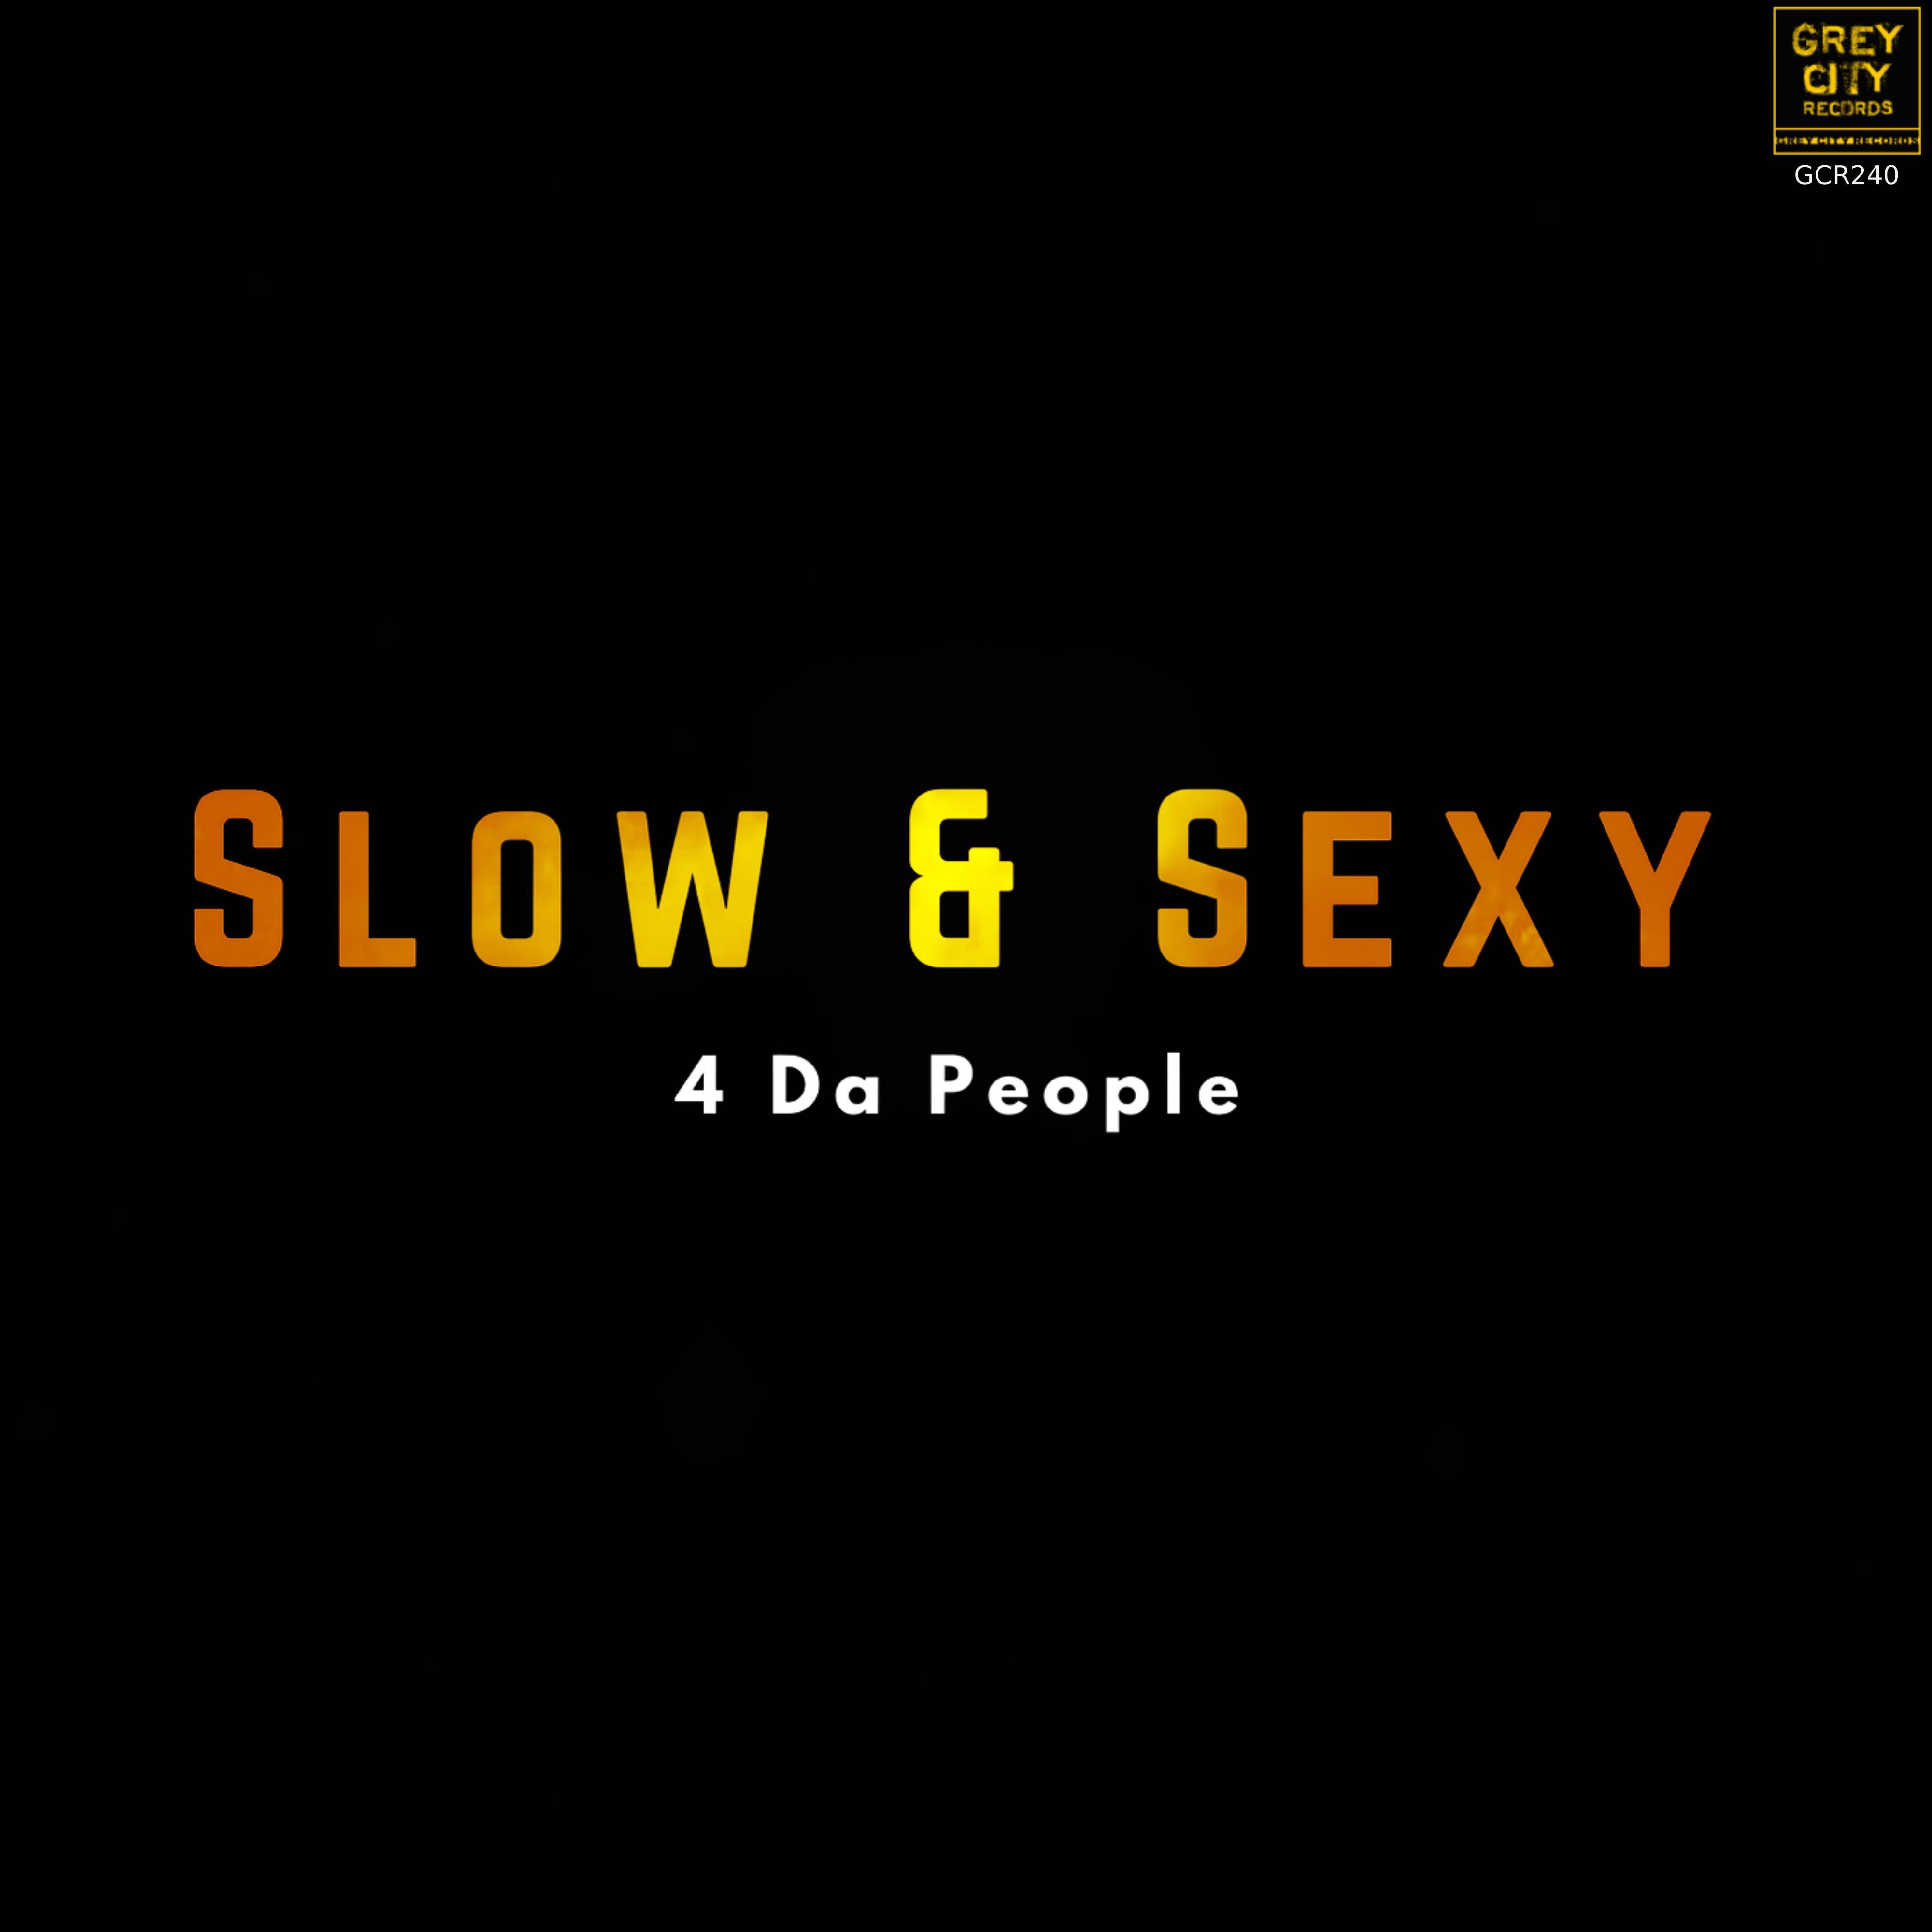 Slow & ****